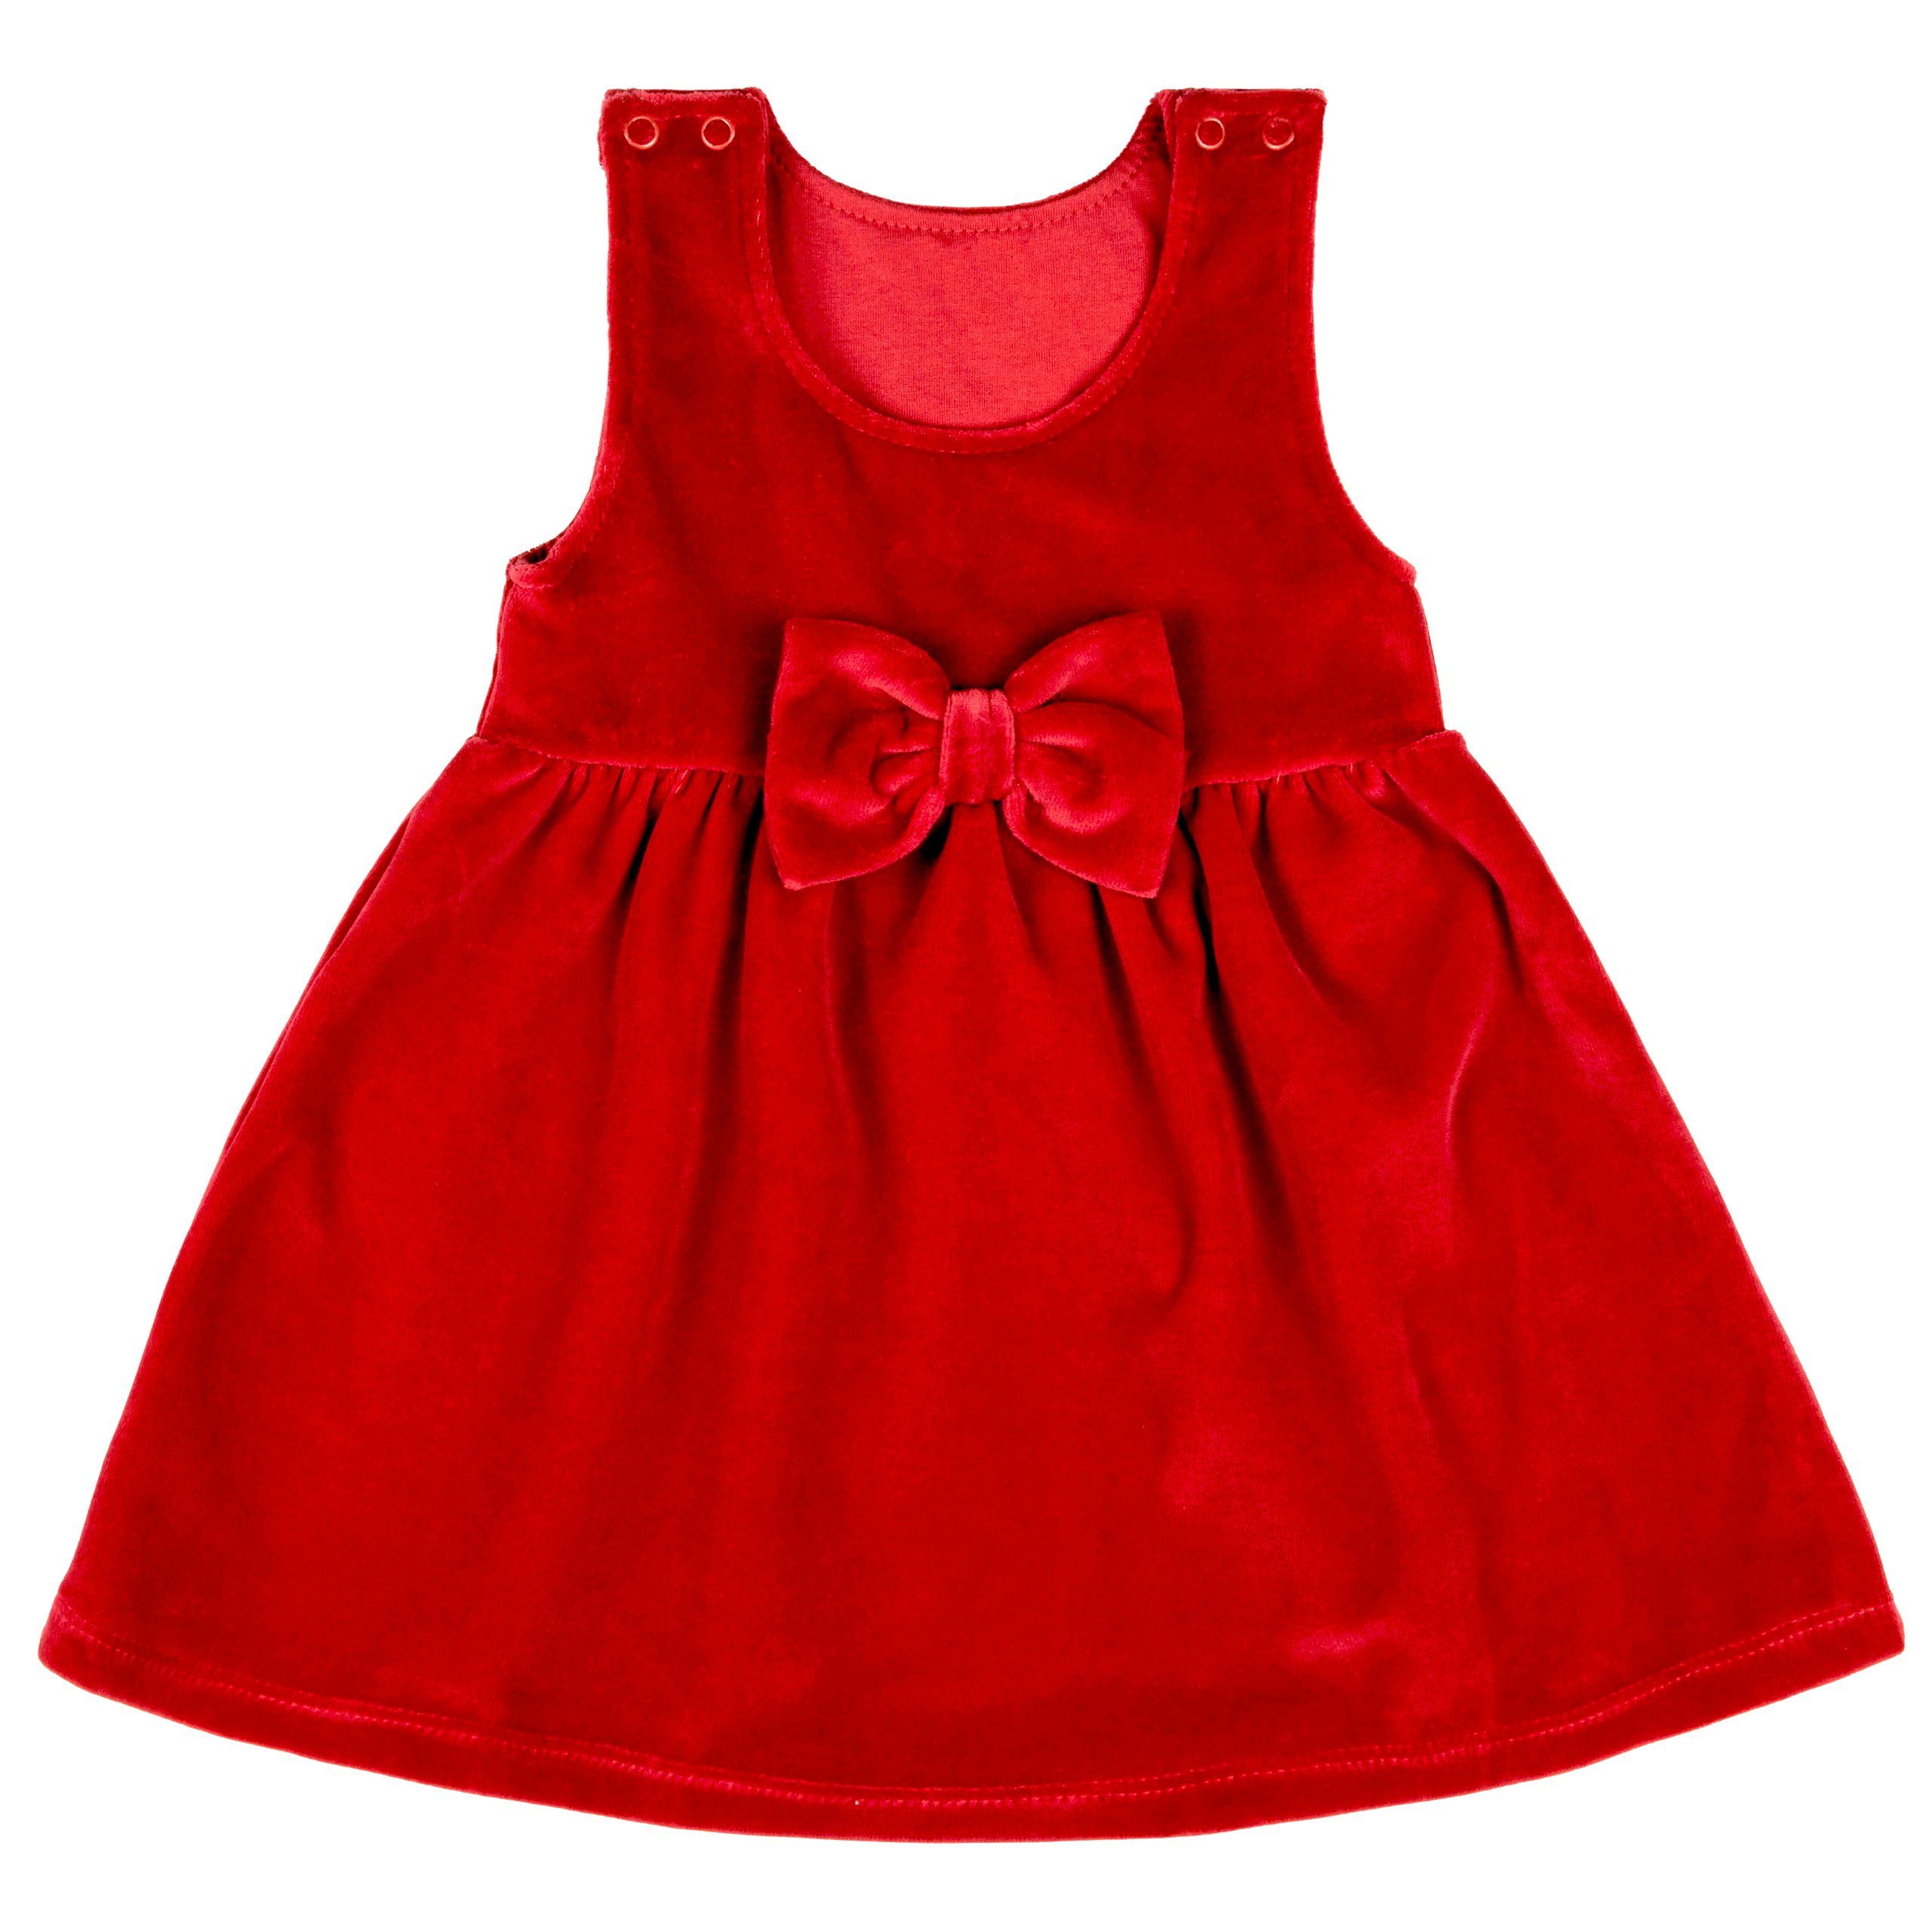 Babymajawelt Babydollkleid Babykleid Weihnachten Rot, Samtkleid mit Schleife hochwertig verarbeitet, lockere Passform, Made in EU